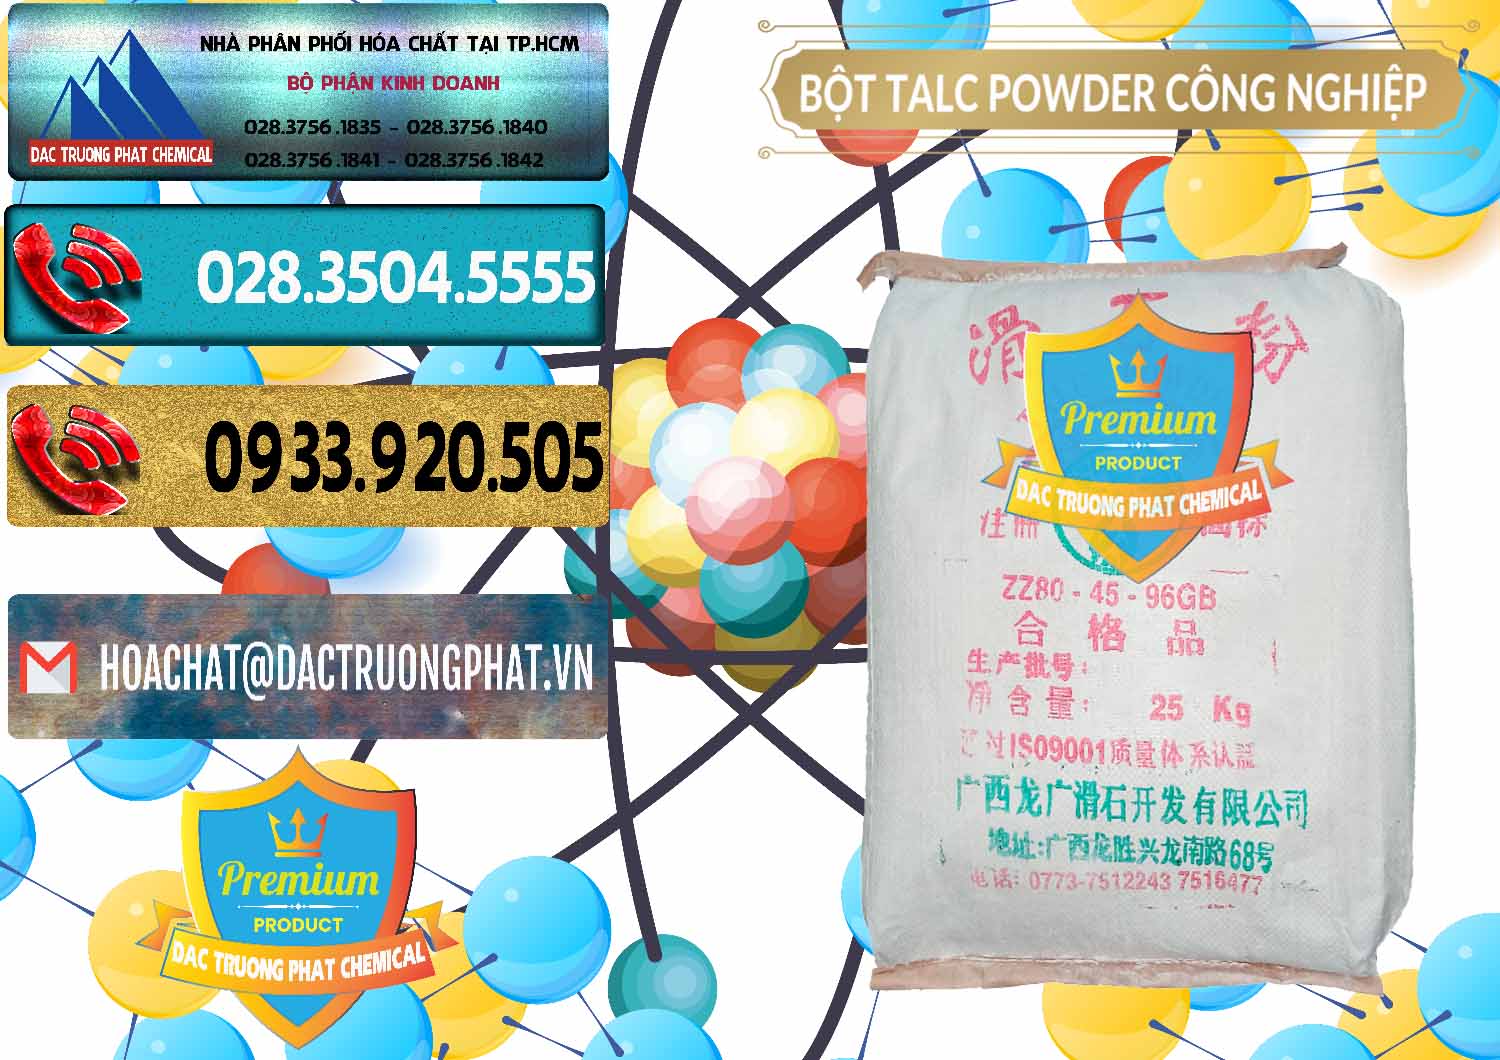 Chuyên cung cấp & bán Bột Talc Powder Công Nghiệp Trung Quốc China - 0037 - Chuyên nhập khẩu ( cung cấp ) hóa chất tại TP.HCM - hoachatdetnhuom.com